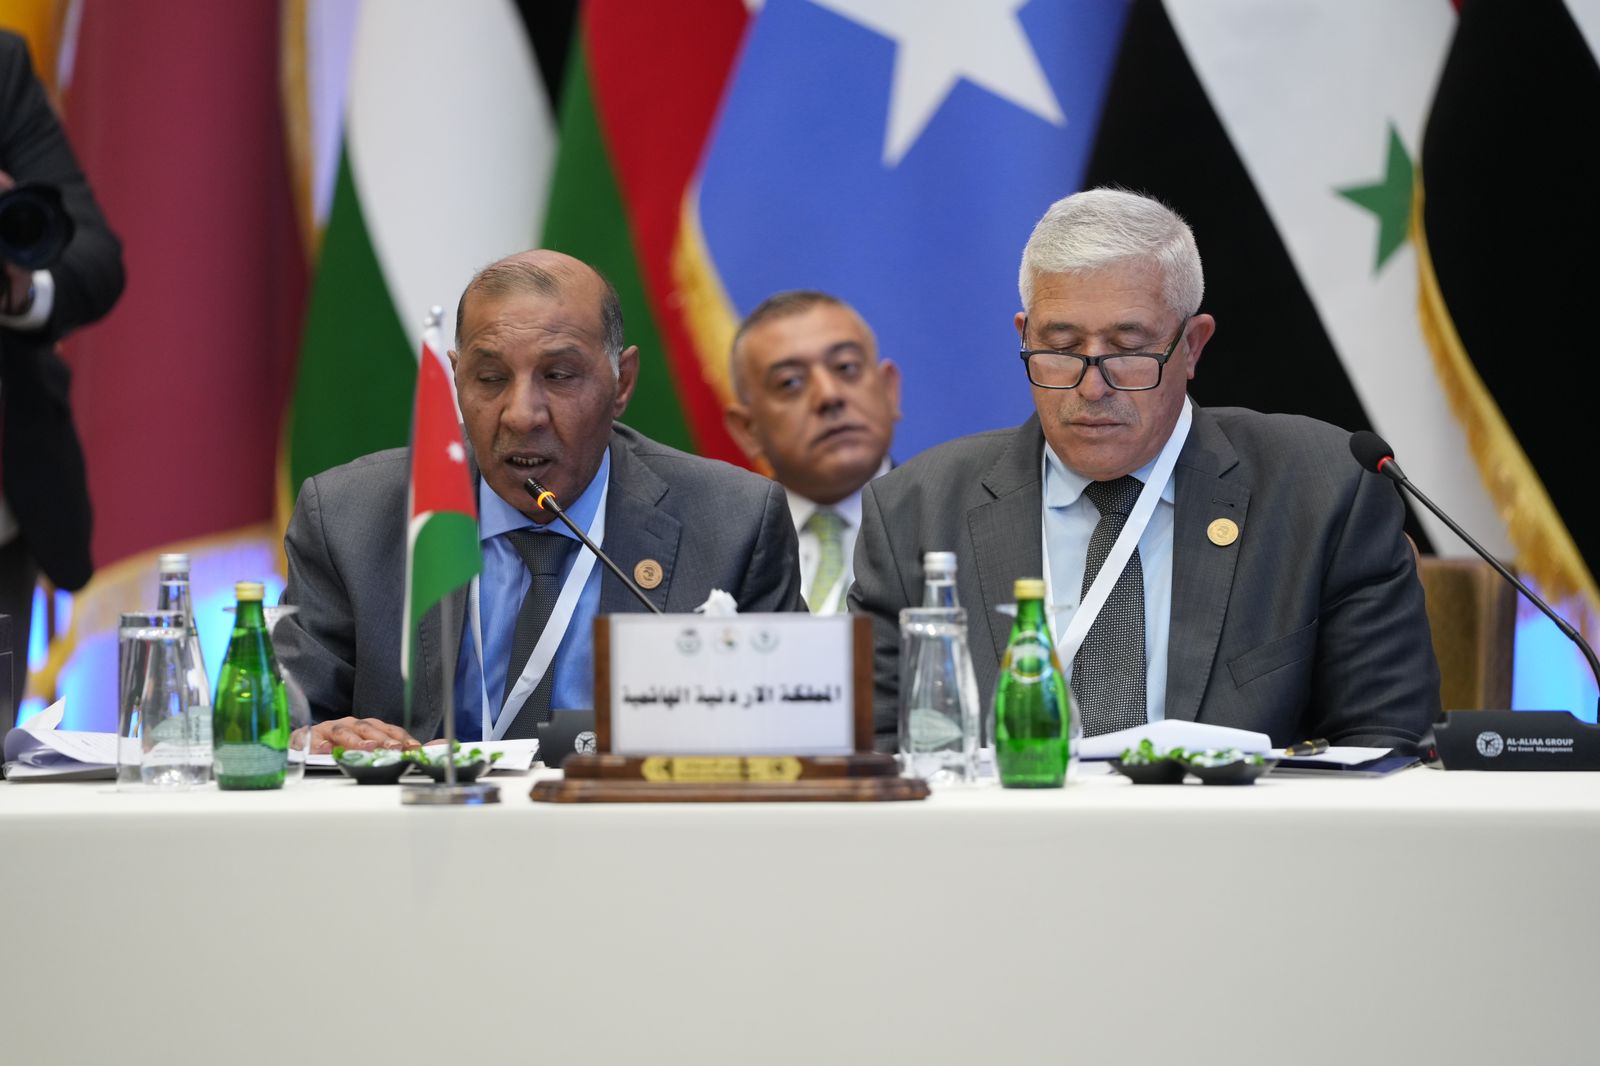 اللجنة التنفيذية للاتحاد البرلماني العربي تختتم أعمالها للدورة 32 